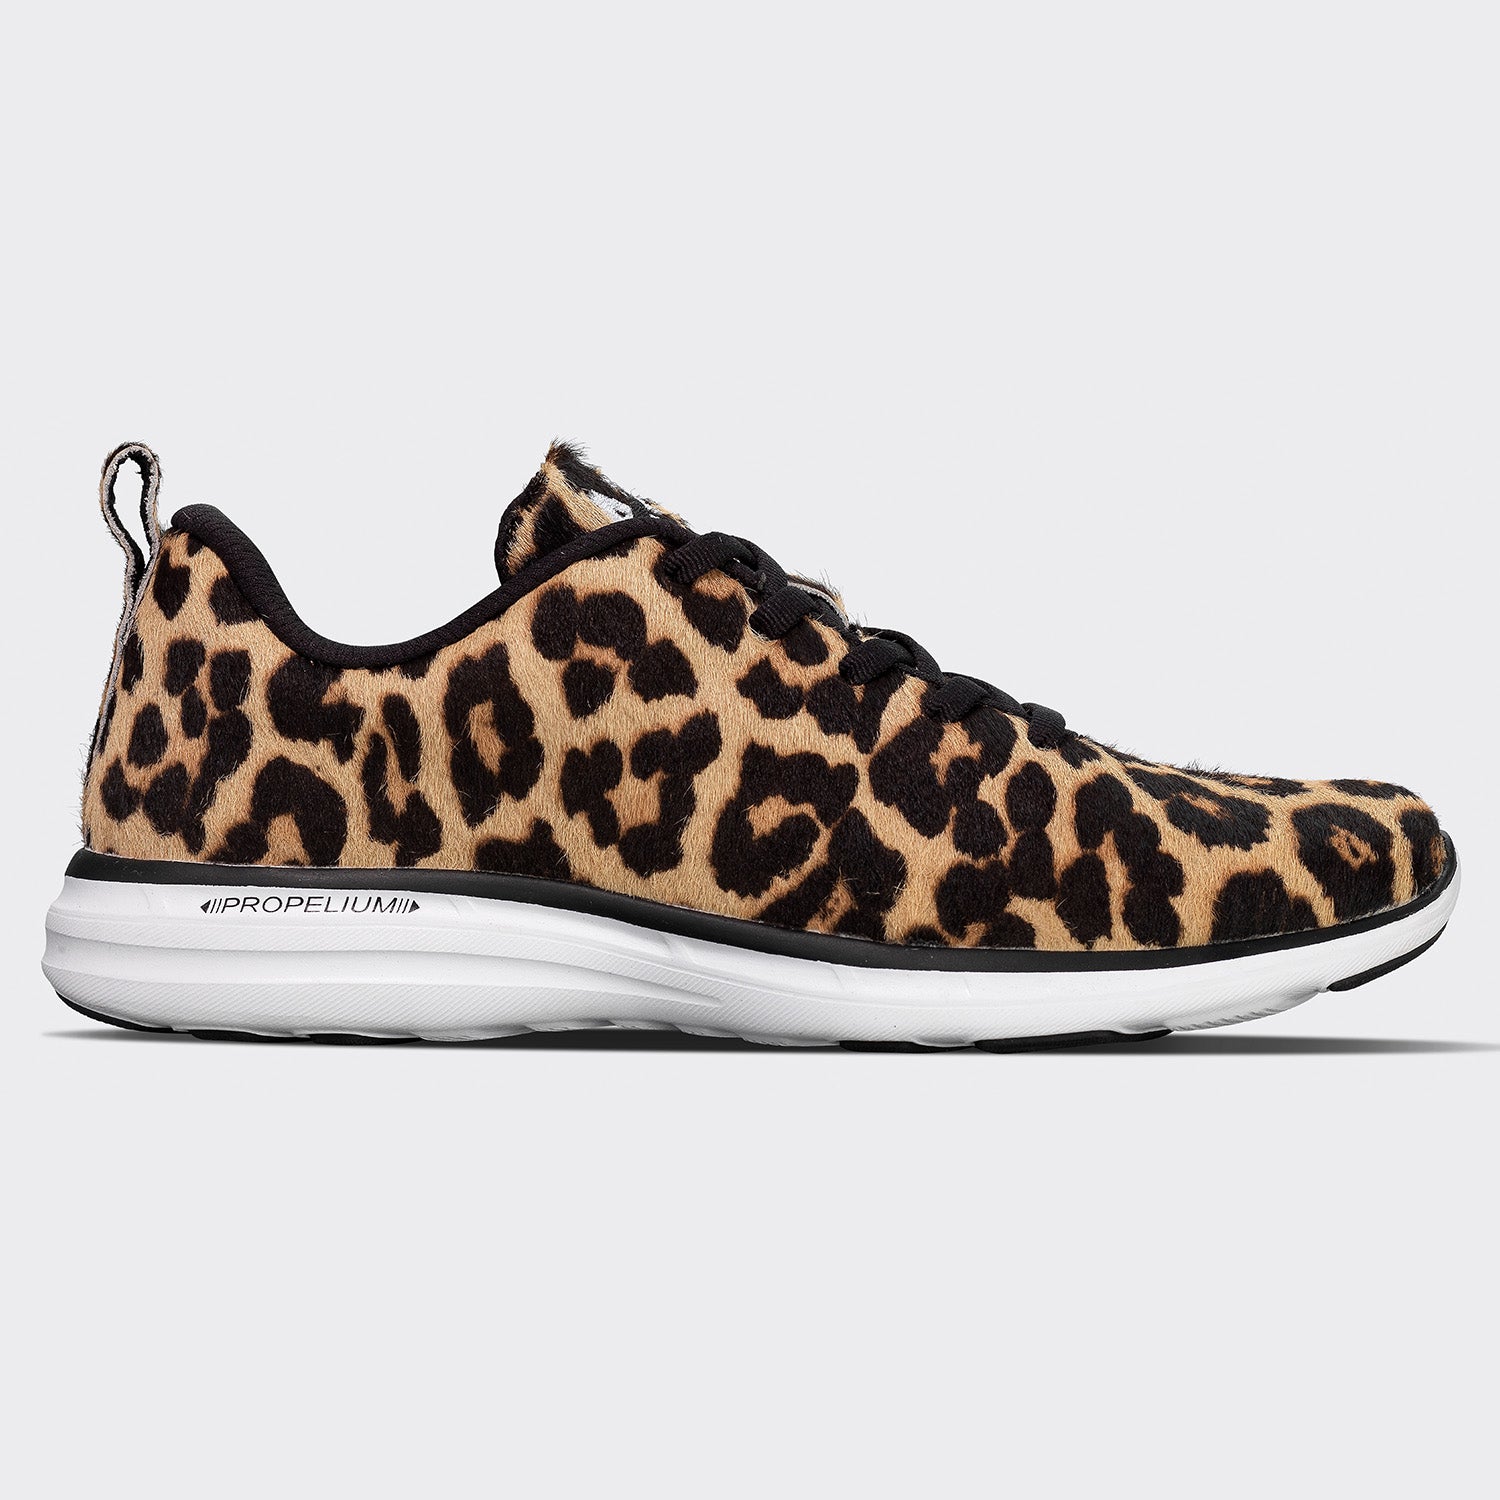 sneakers leopard